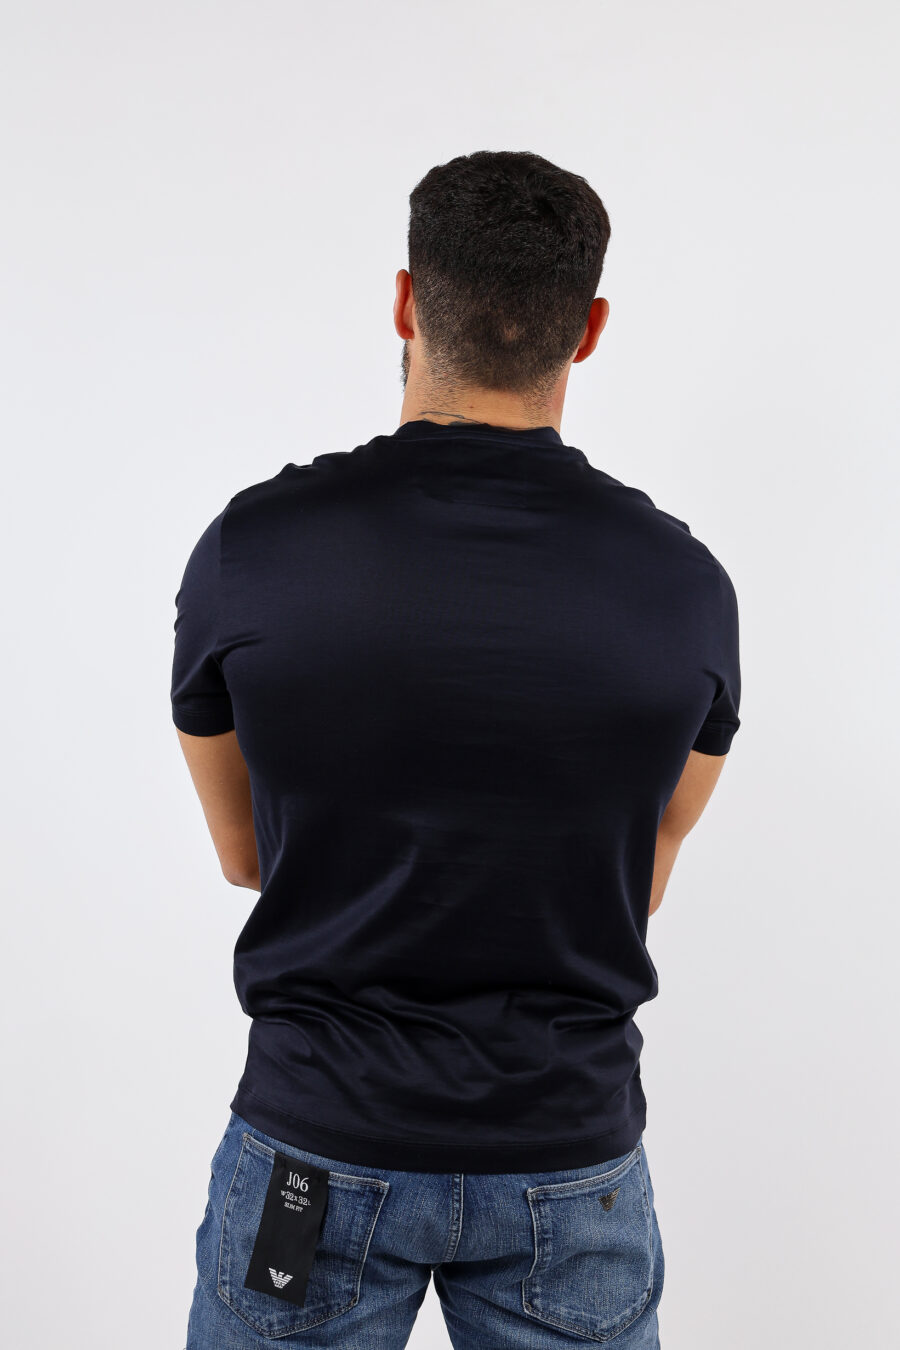 Camiseta azul oscuro con minilogo "emporio" - BLS Fashion 27